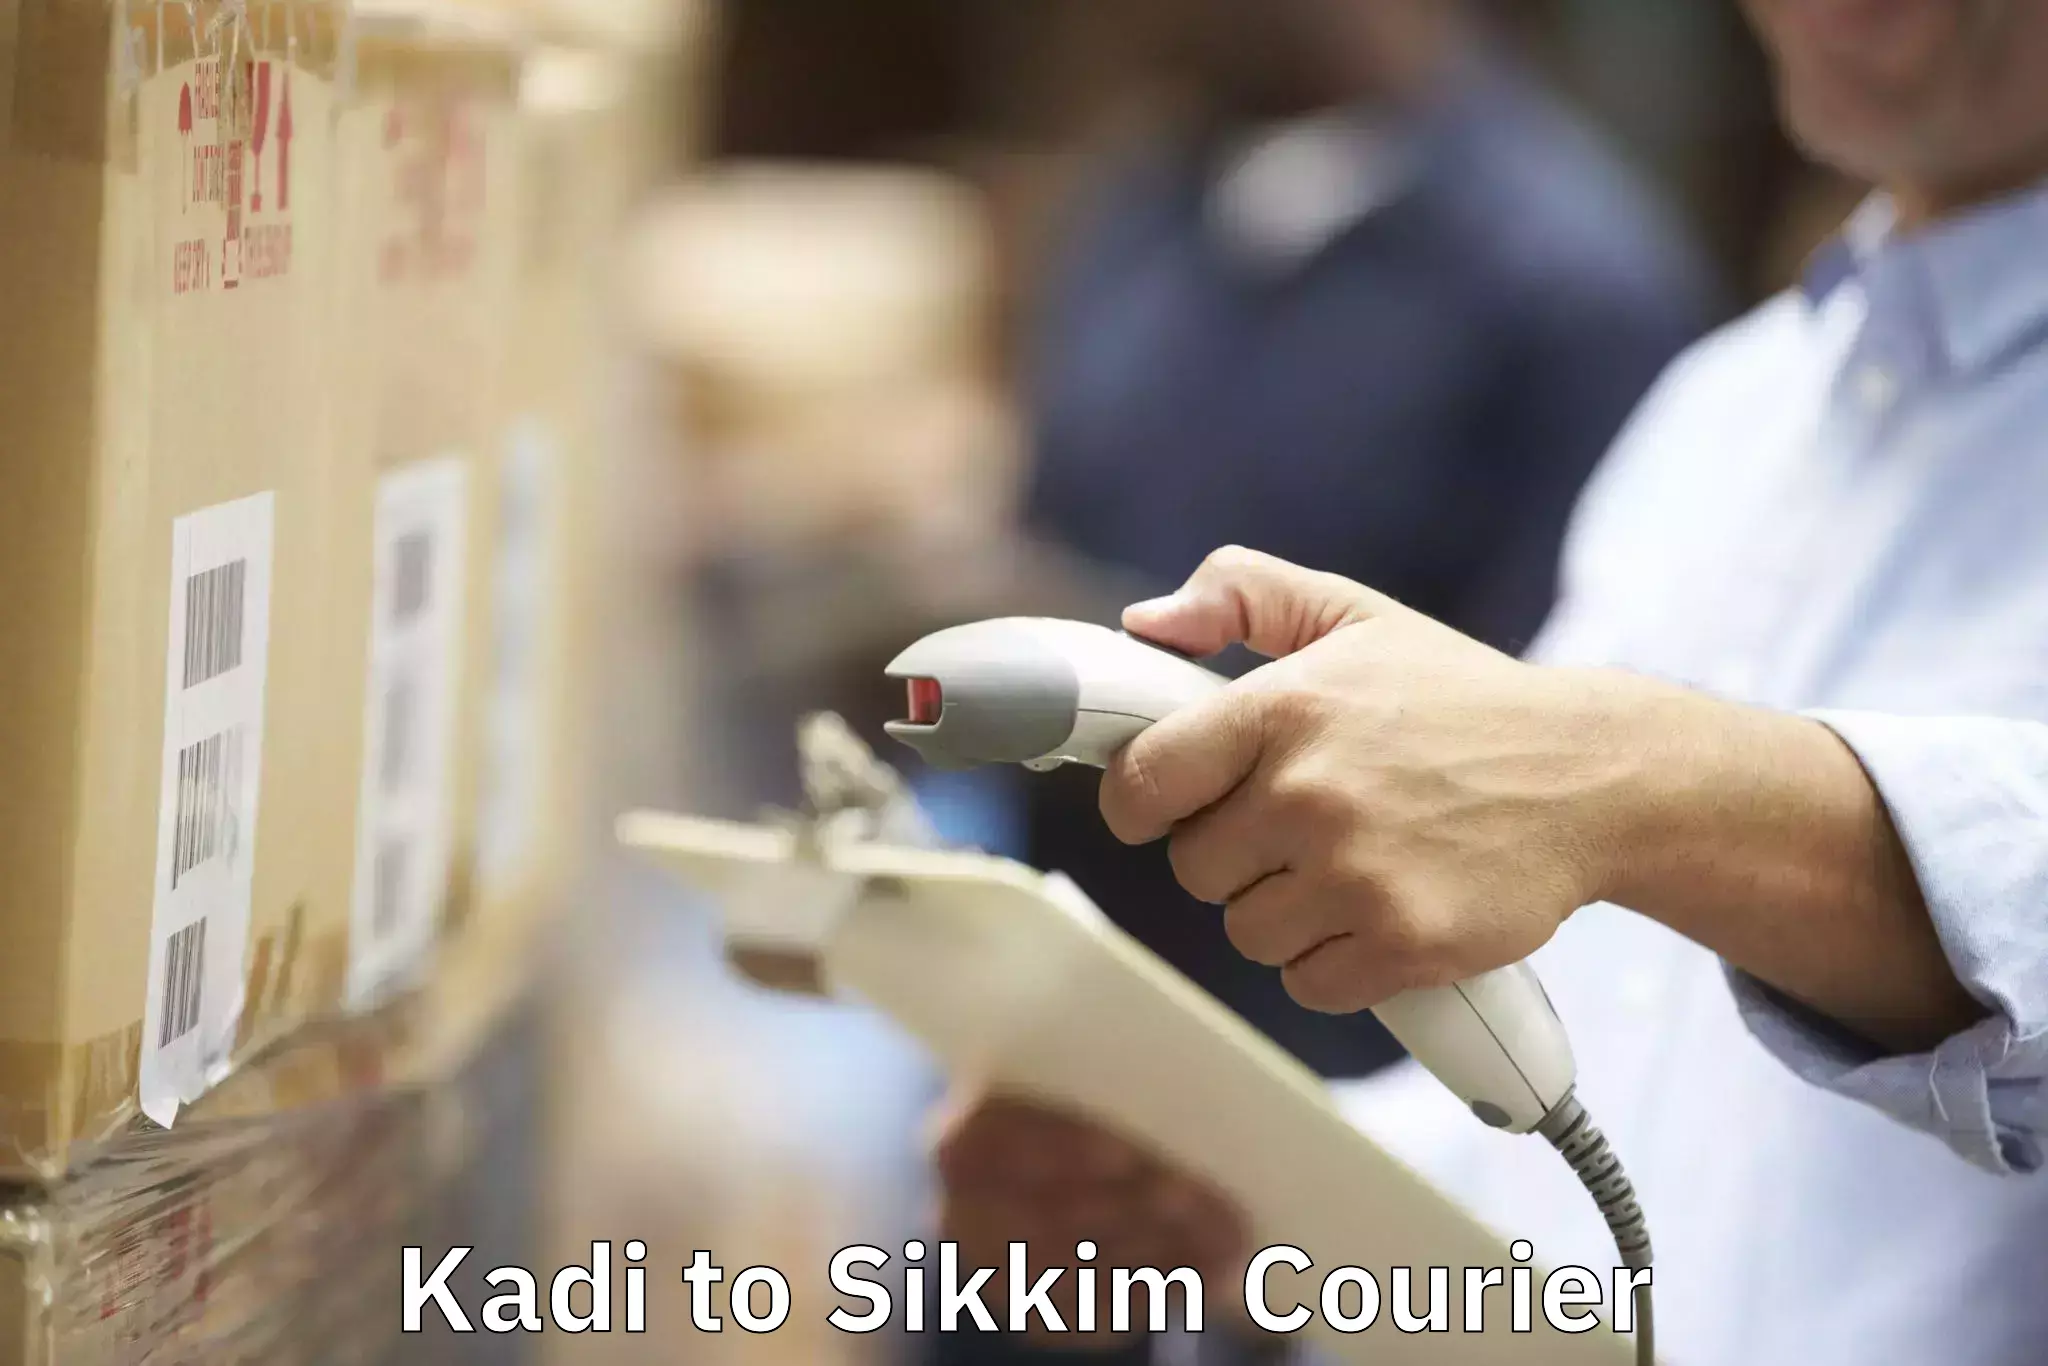 Furniture transport company Kadi to North Sikkim